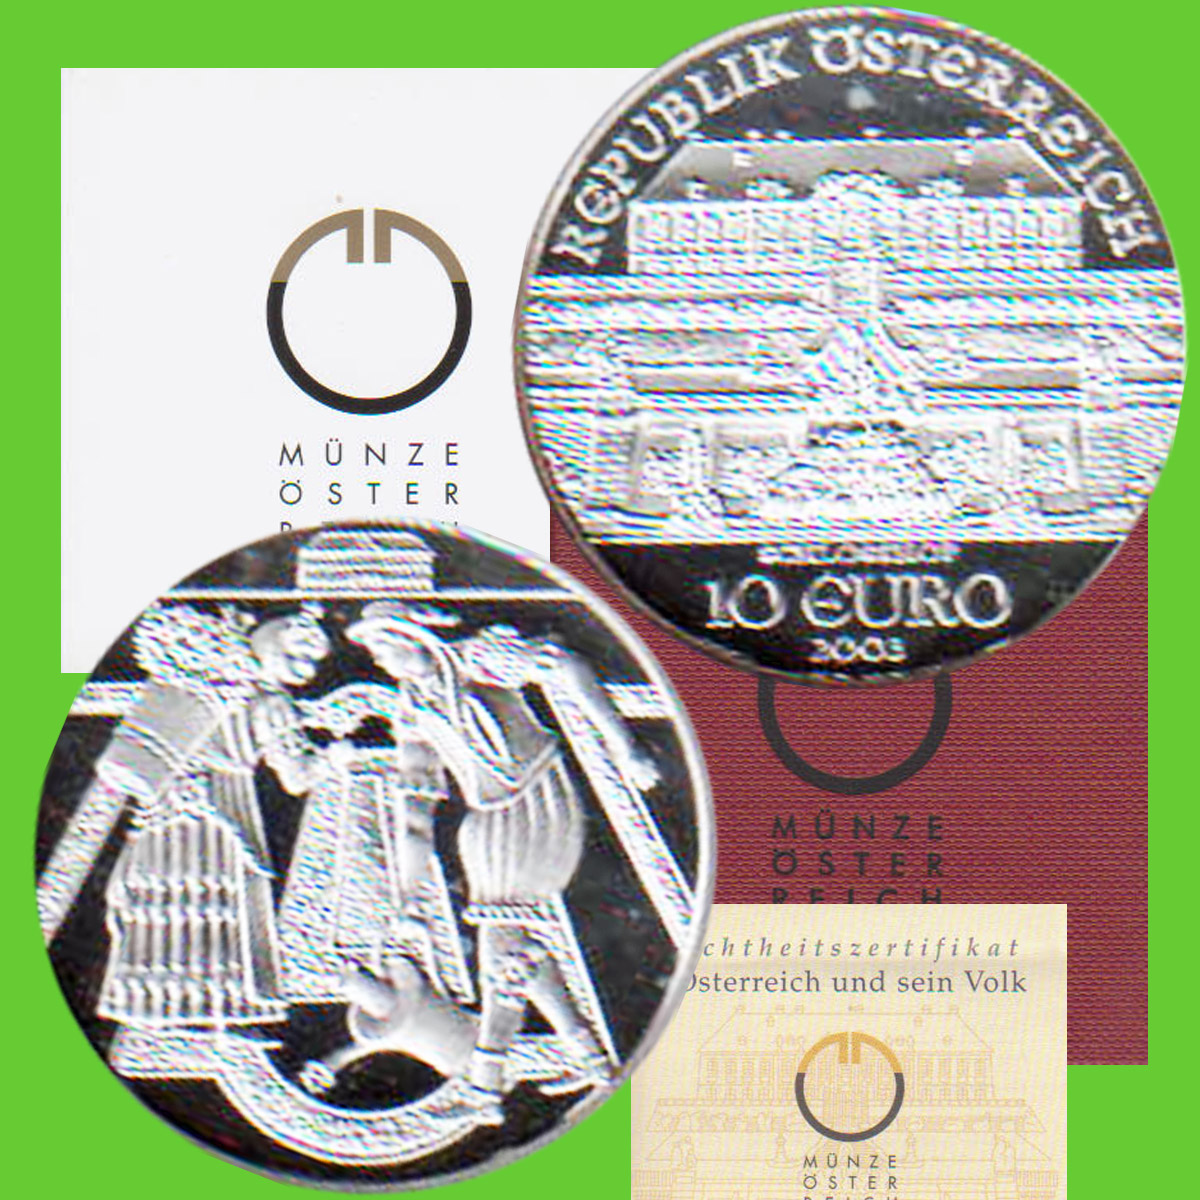  Offiz. 10 Euro Silbermünze Österreich *Schloss Hof* 2003 *PP* max 50.000St!   